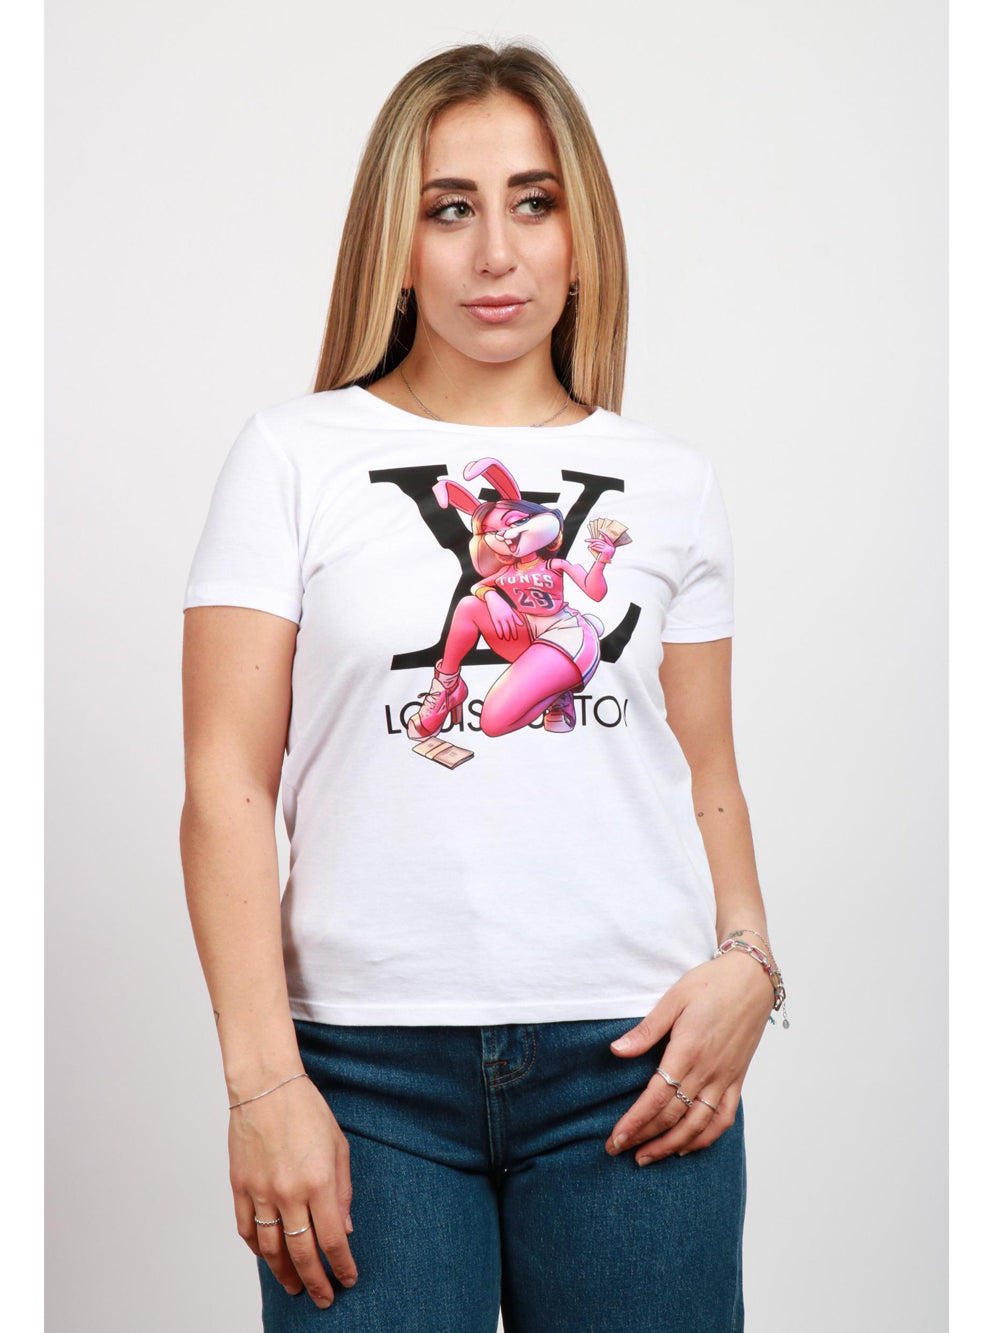 DBSOUL T-Shirt Rimini Bianca con Stampa Lola Bunny e Louis Vuitton Bianco